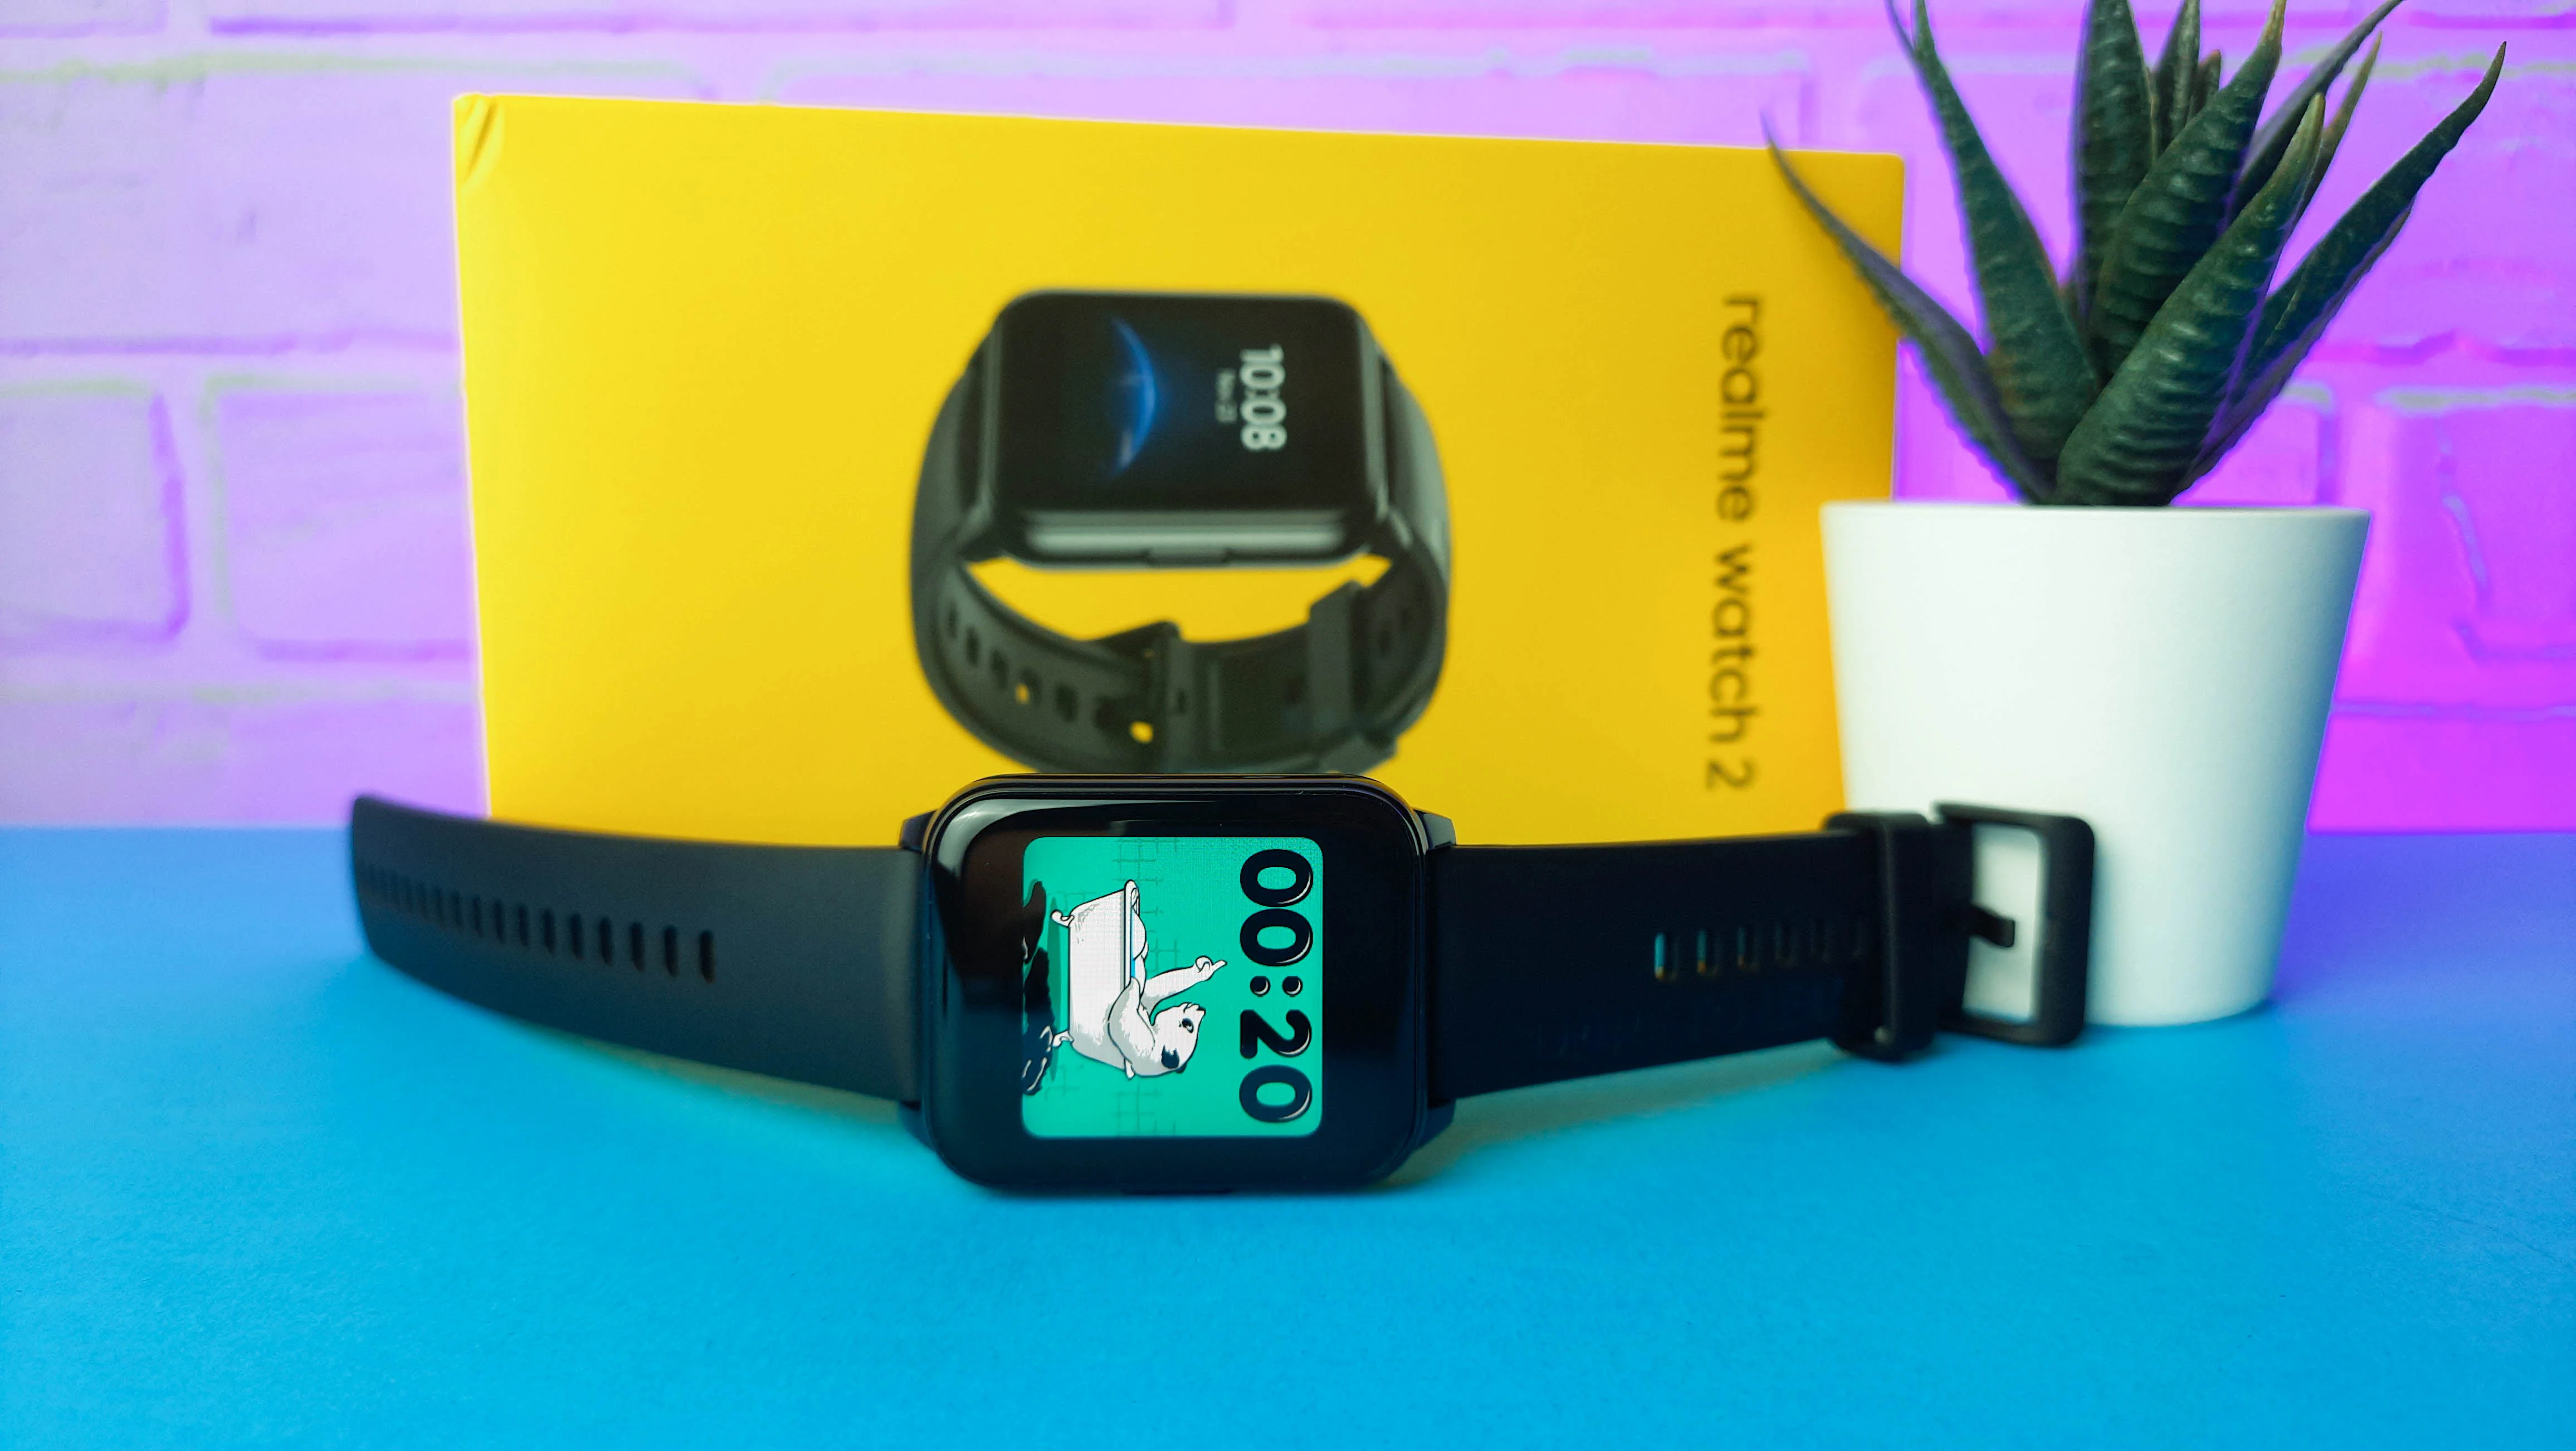 В августе Realme представила на российском рынке умные часы Realme Watch 2. Новинку позиционировали как бюджетный наручный гаджет с десятками тренировок, стильным дизайном и водозащищённым корпусом. Всё это действительно правда, но главный вопрос в другом — получилось ли у компании сделать модель лучше, чем уже есть у её популярных конкурентов Xiaomi и Amazfit. Отвечаем на него в обзоре «Канобу».